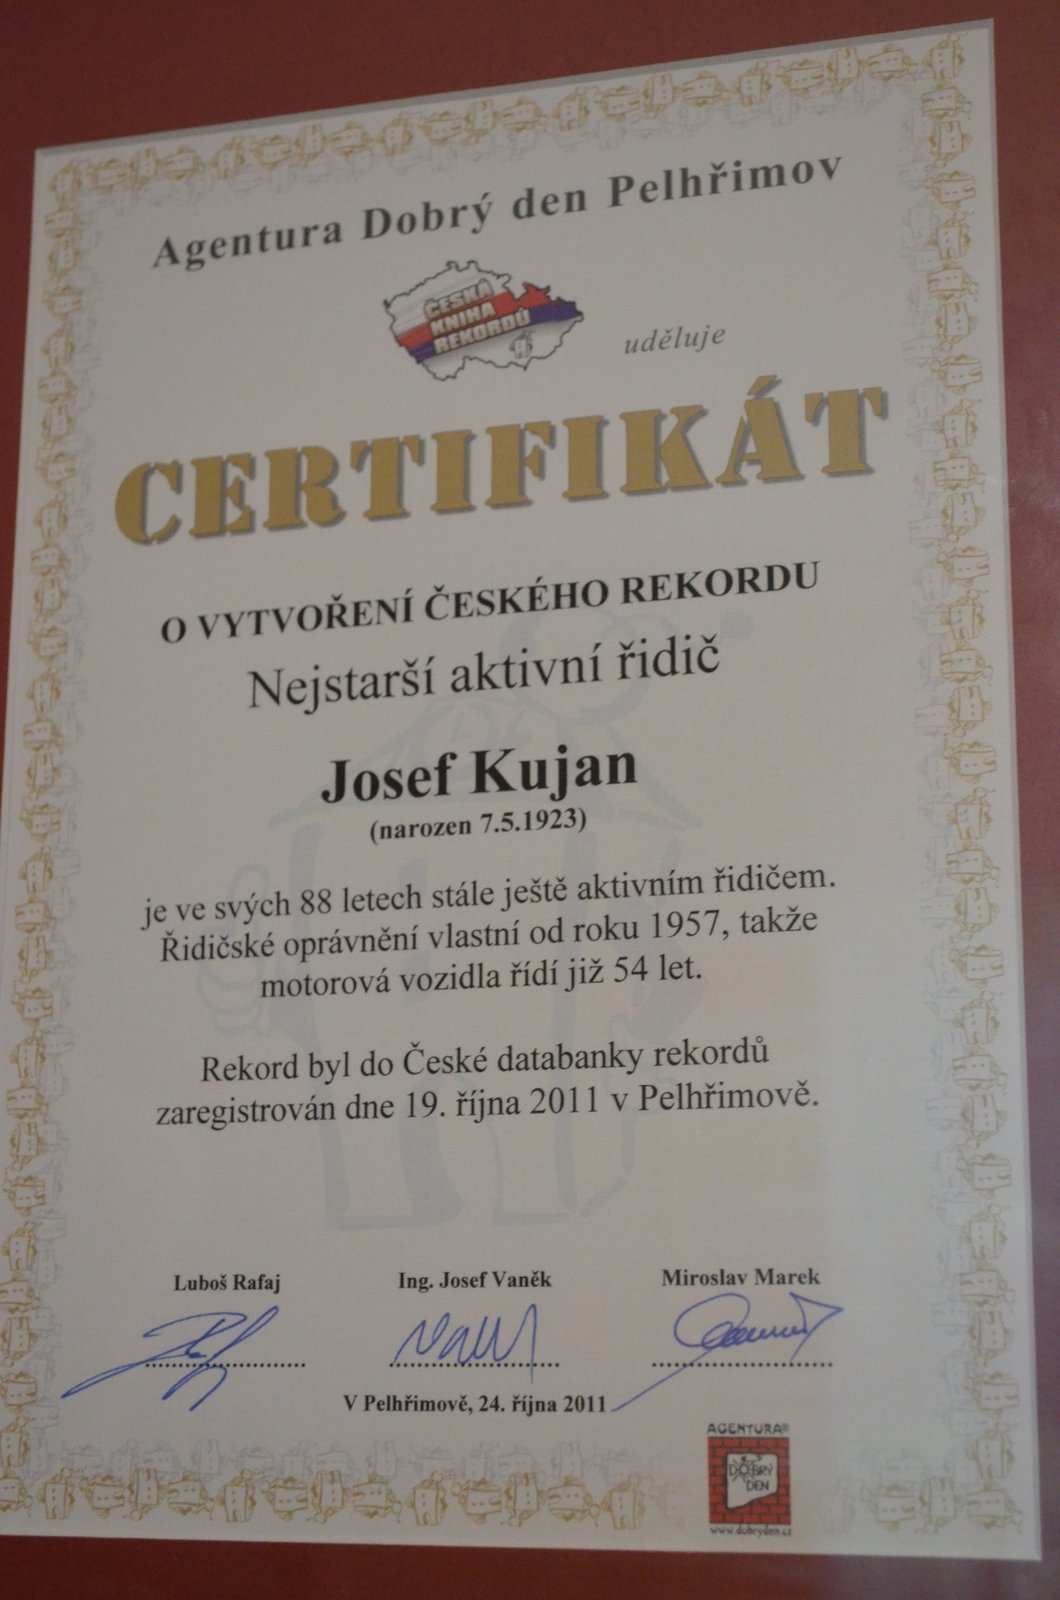 Certifikát o českém rekordu. Josef Kujan v roce 2011 v 88 letech řídil auto.